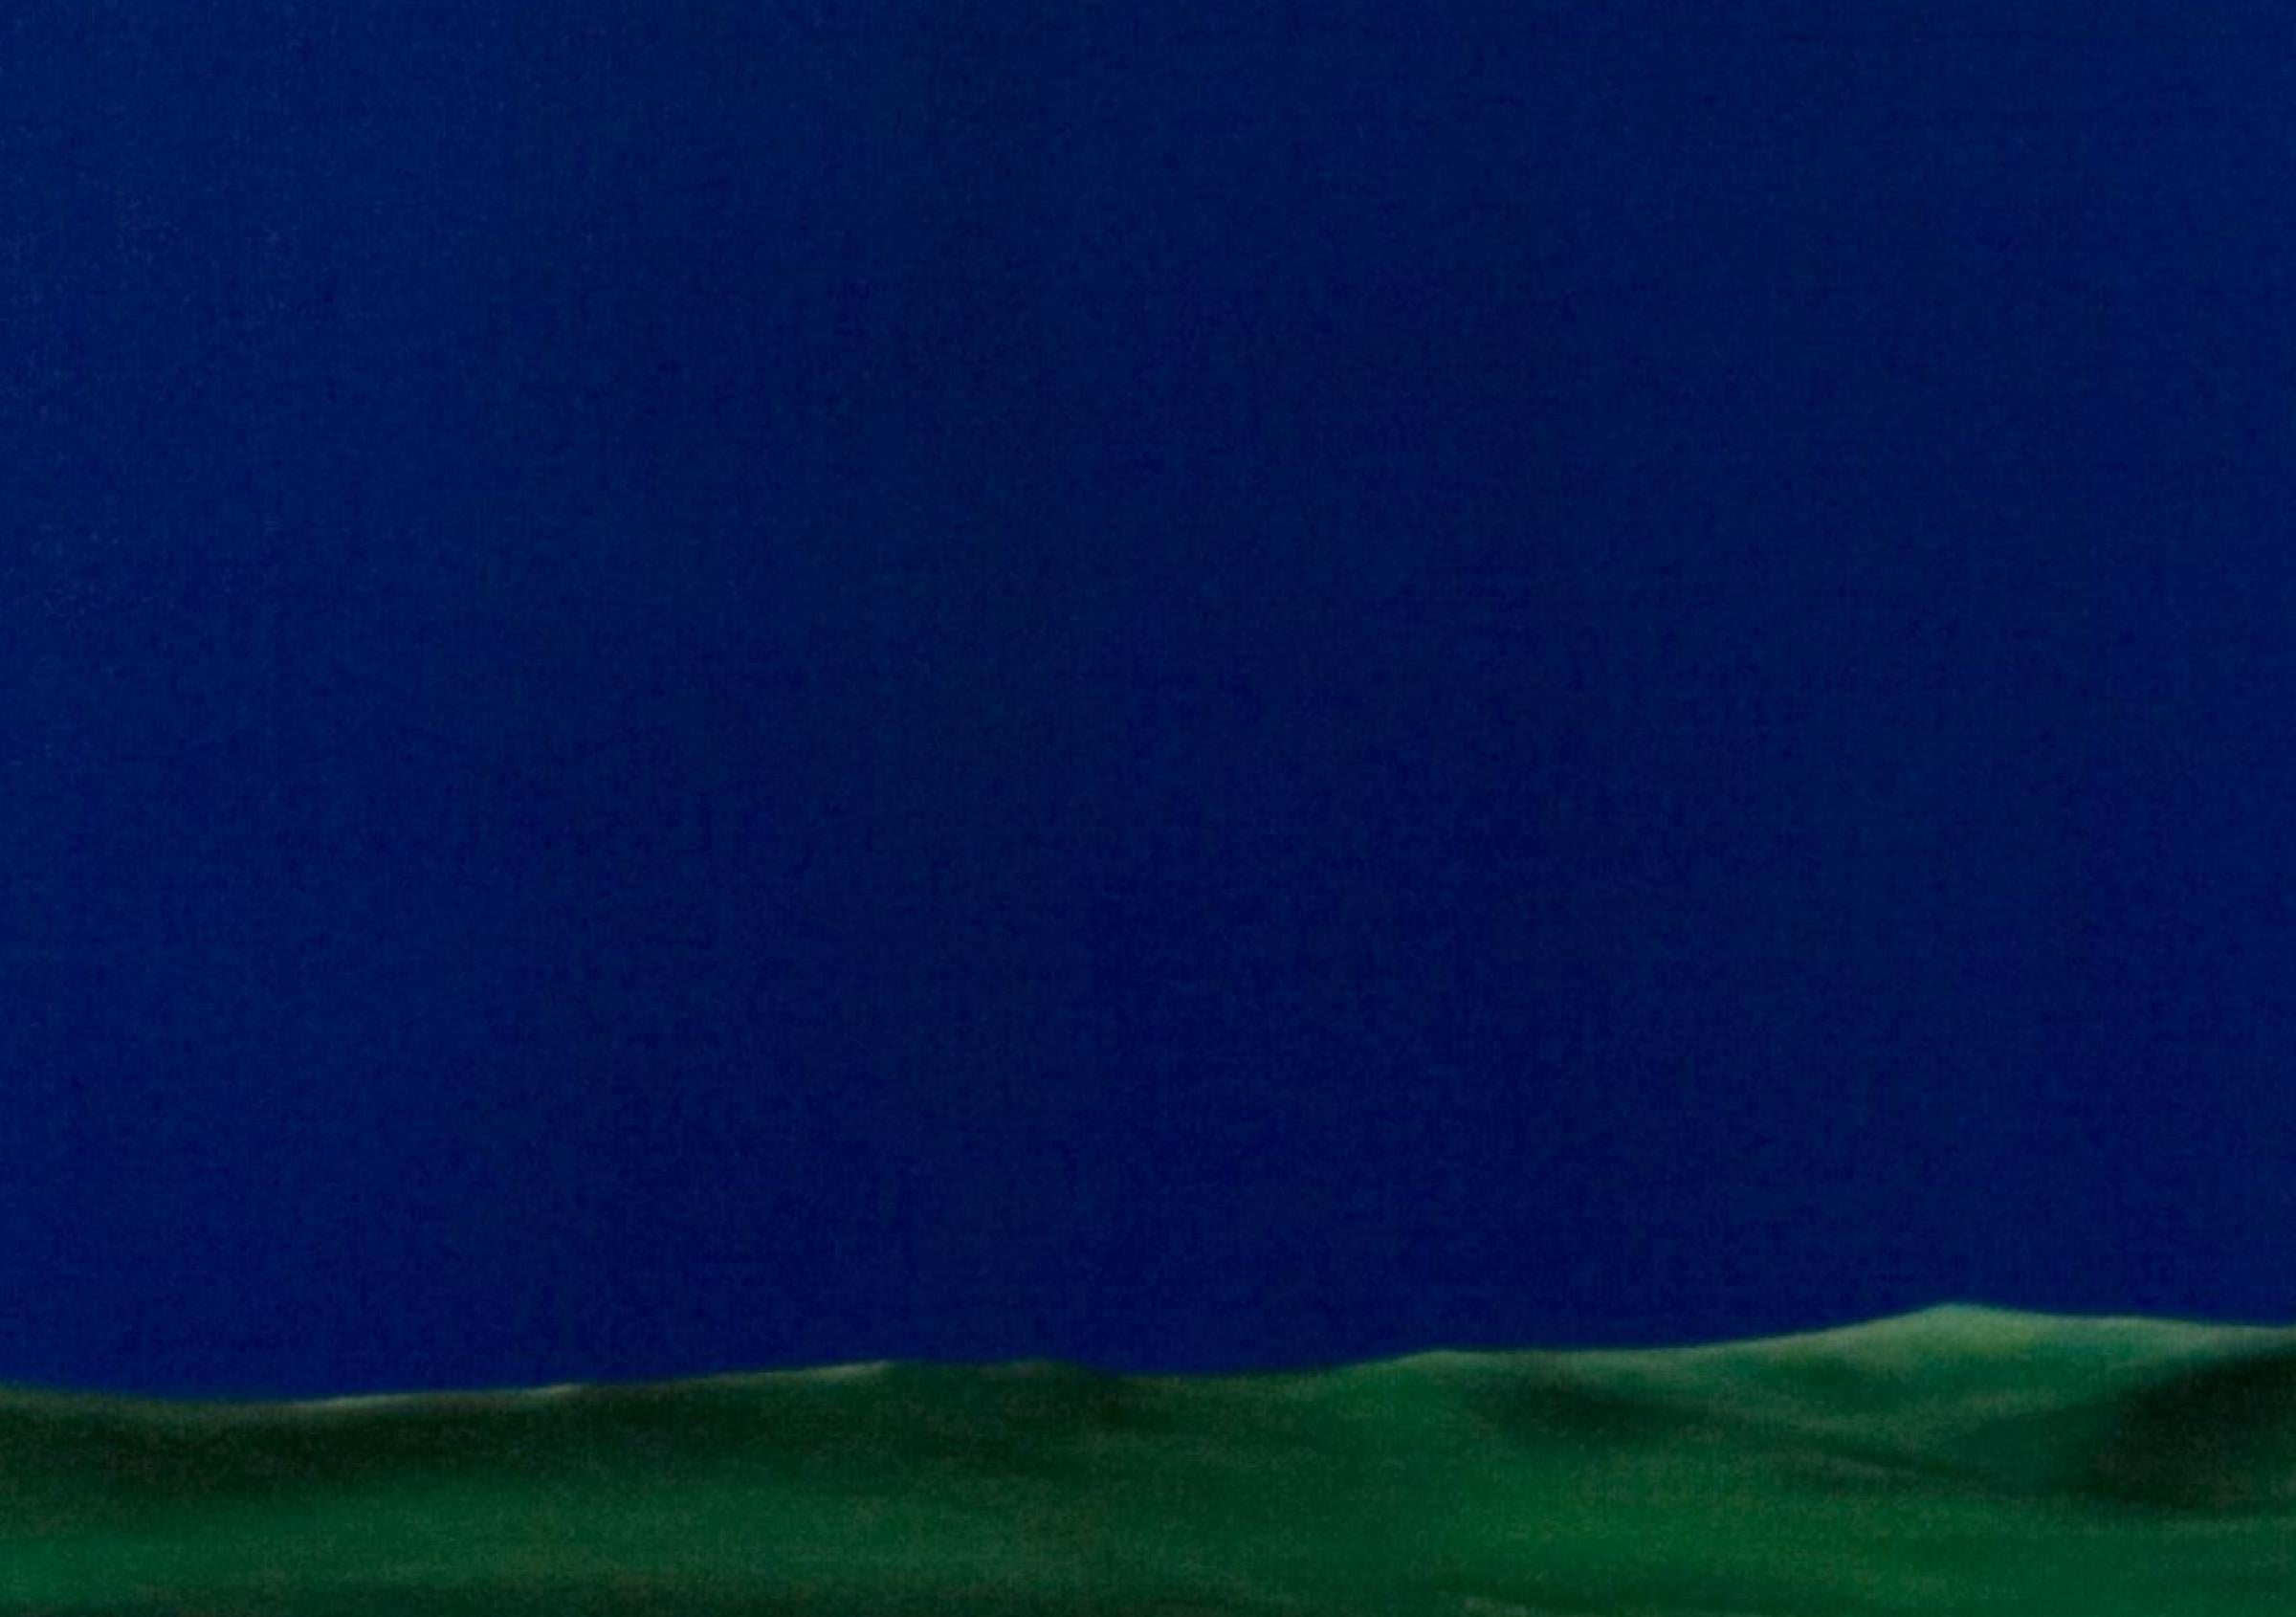 Chroma sky (Blue key) 10 - Contemporary, Blue, Minimalist, Figurative, Landscape - Painting by Cătălin Petrișor